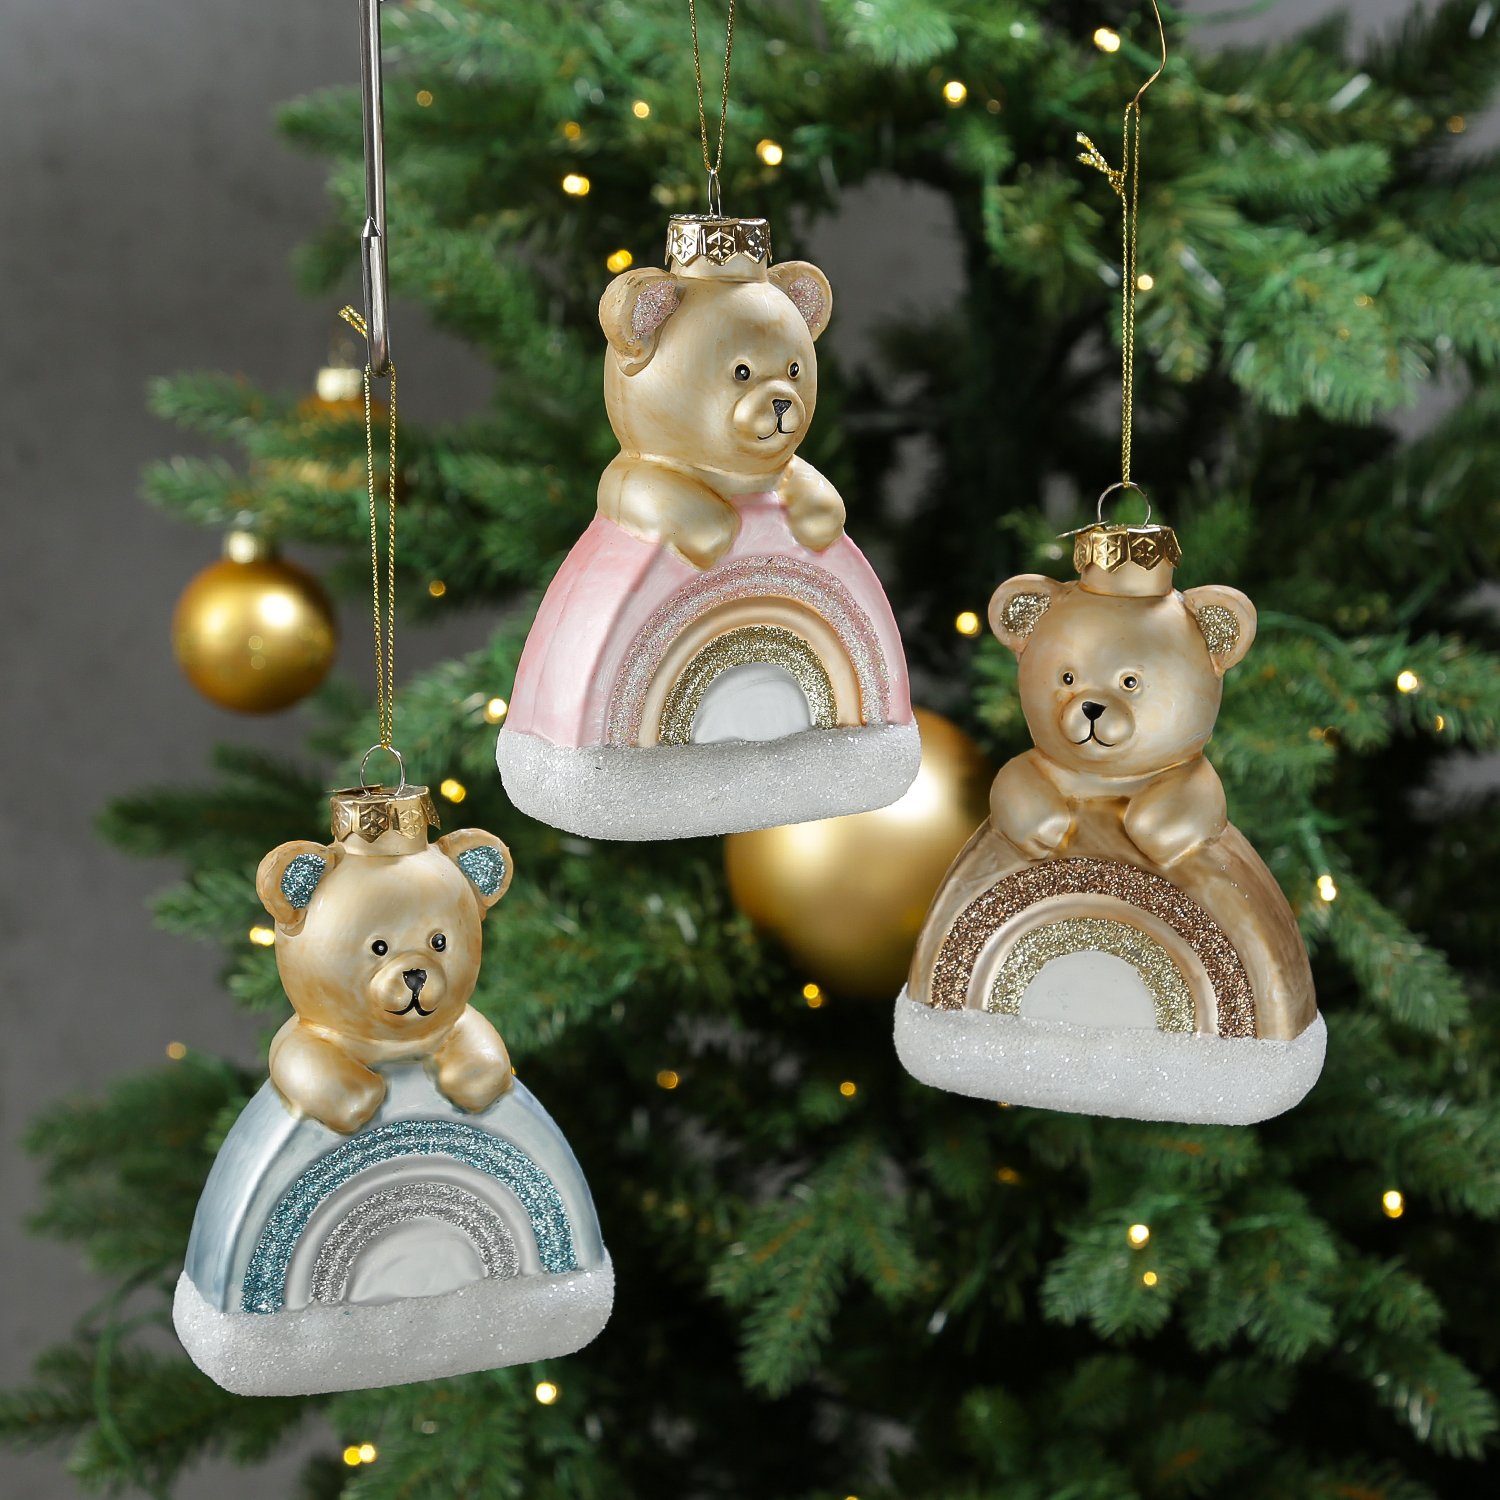 MARELIDA Christbaumschmuck Weihnachtsbaumschmuck Teddybär Glas H: 13,5cm braun mit Regenbogen